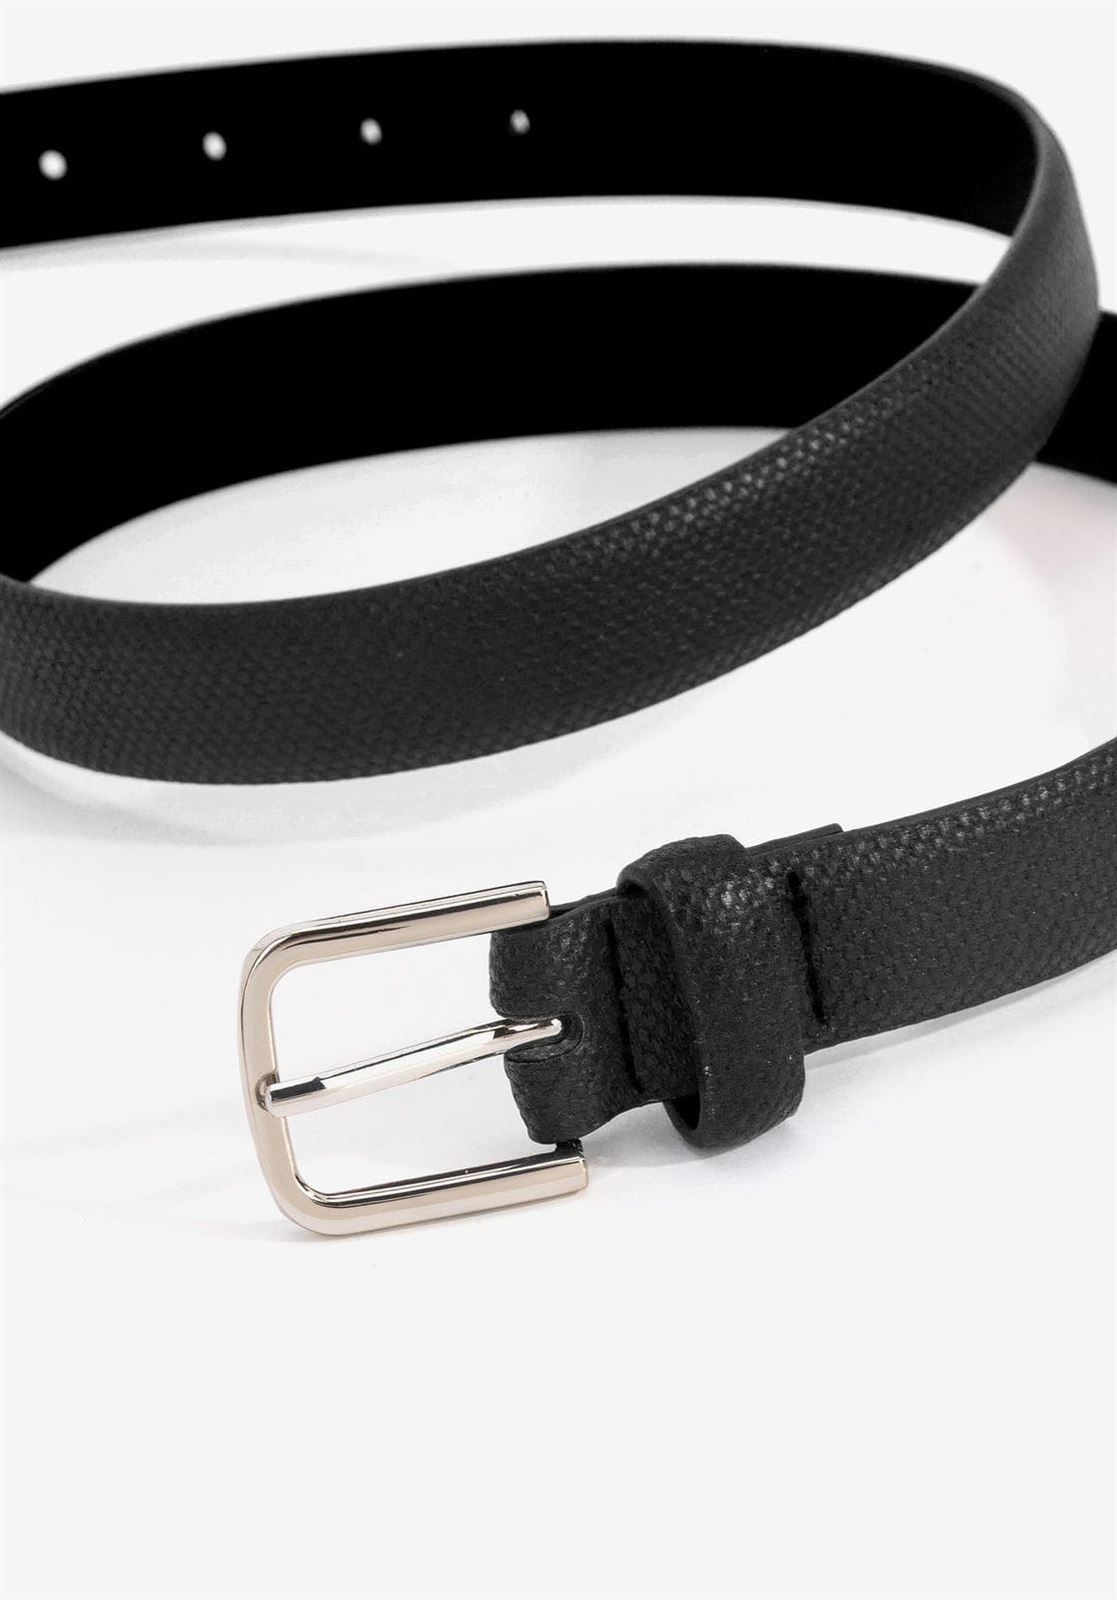 Cinturón negro básico, VILANOVA - Imagen 1